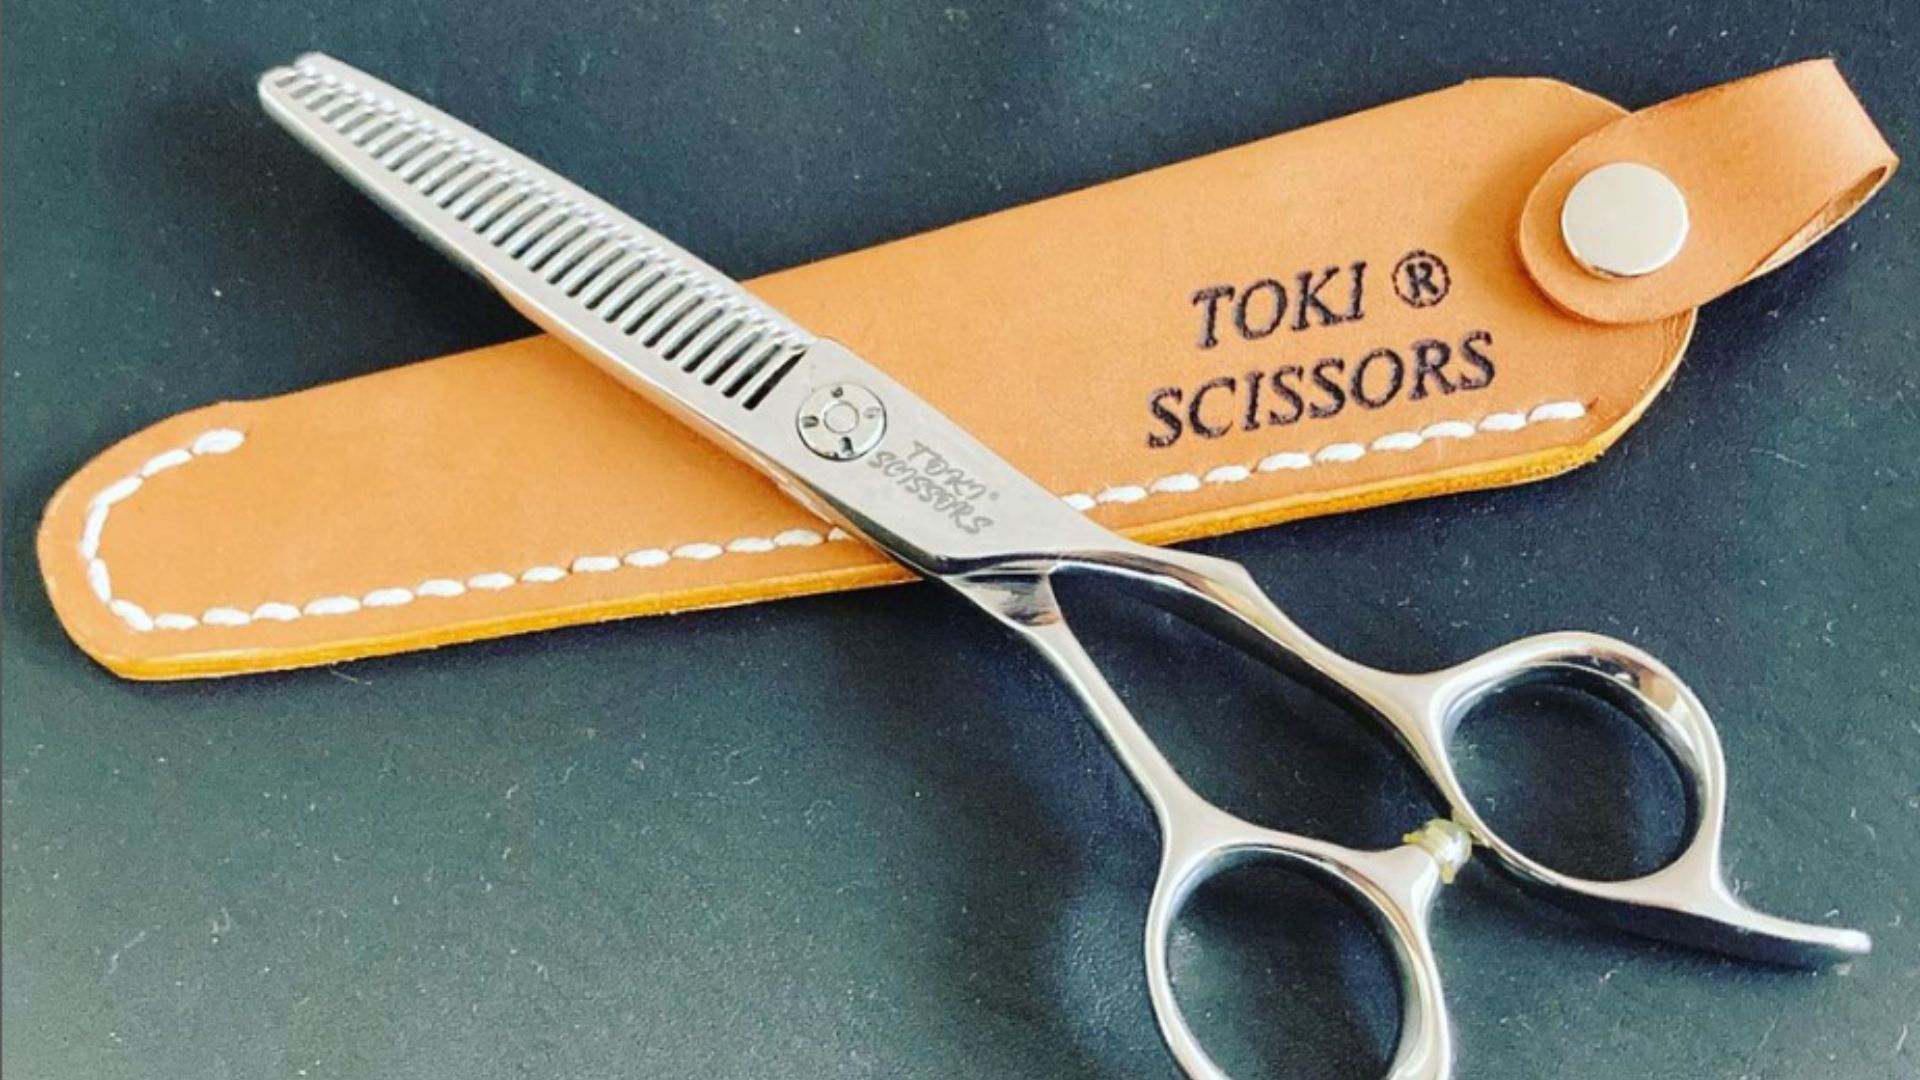 Toki Shears, For Both Wet & Dry Hair. Save 20%